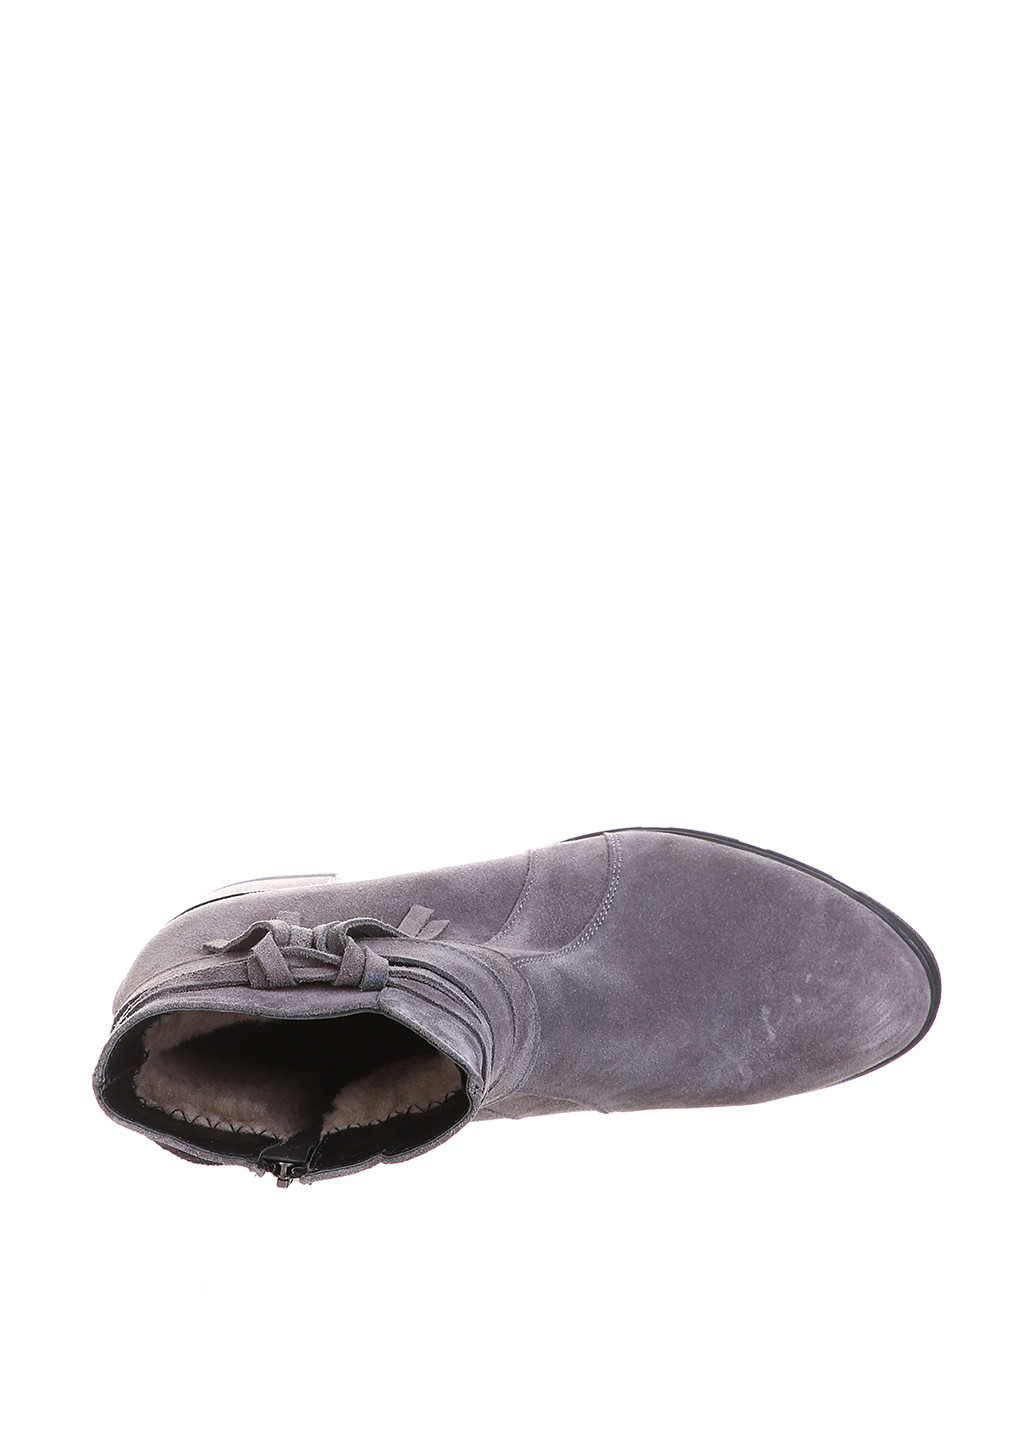 Зимние ботинки Franzini с бахромой из натуральной замши